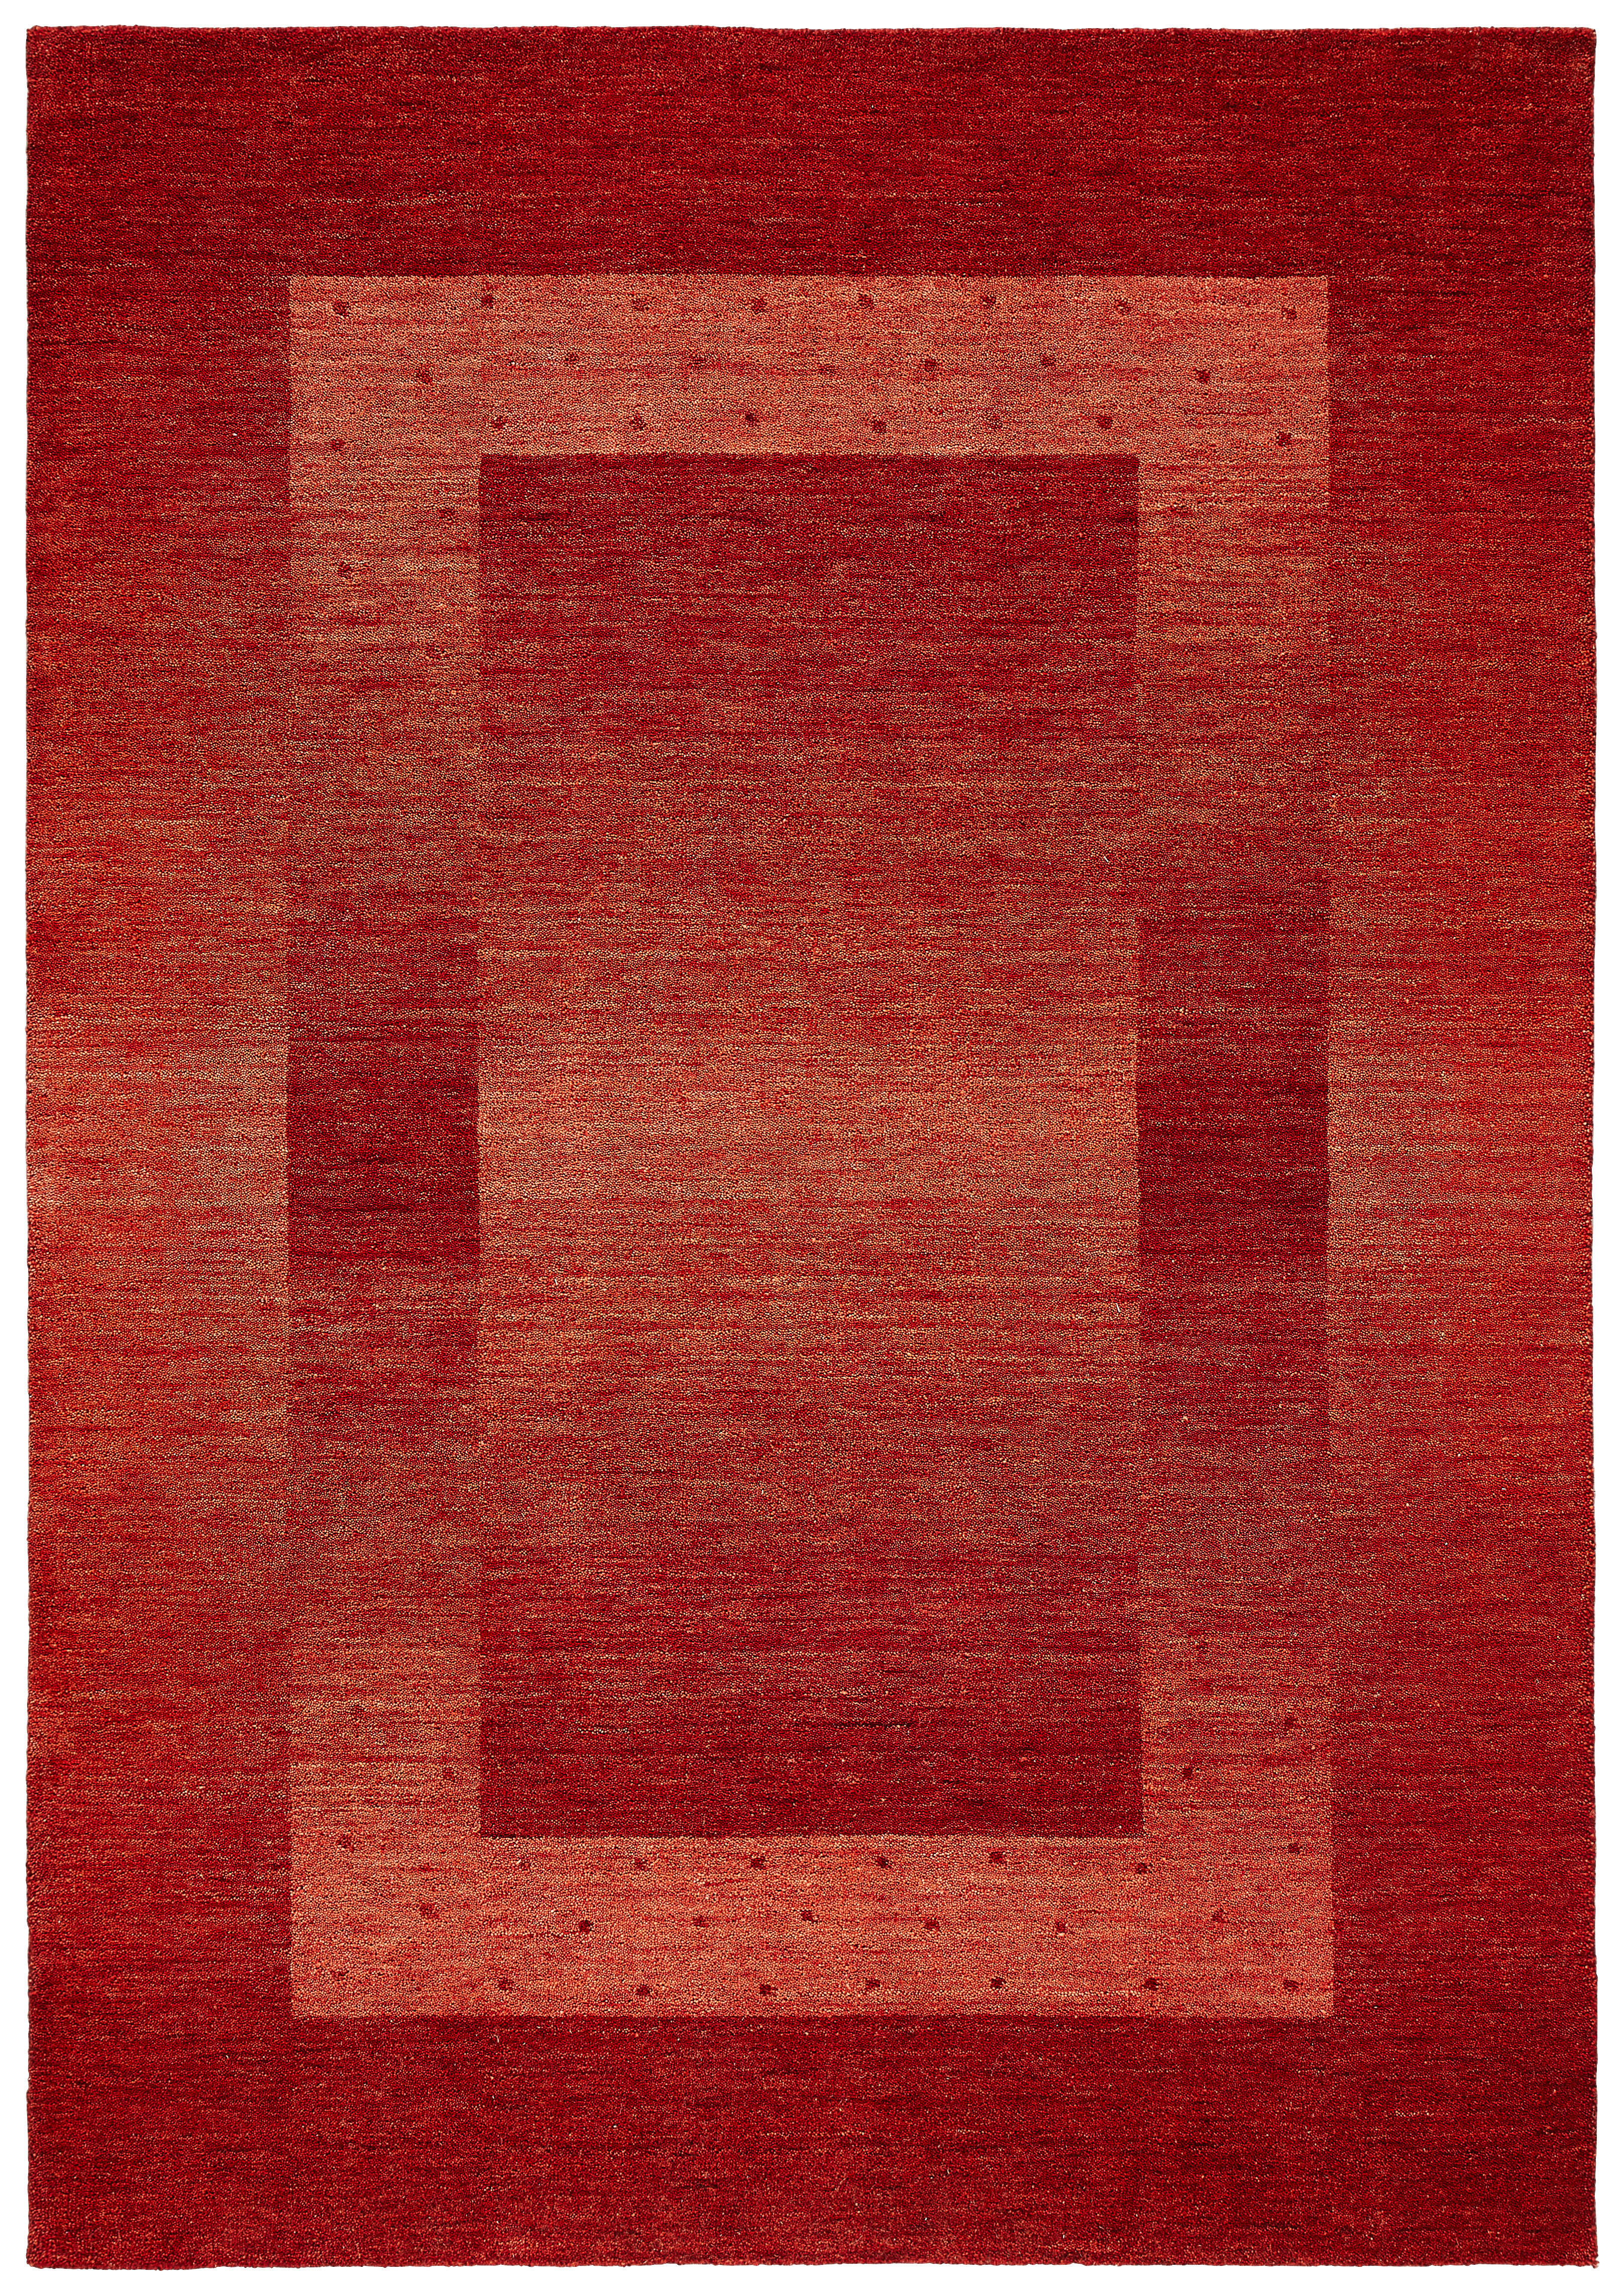 ORIENTTEPPICH 70/140 cm  - Rot, KONVENTIONELL, Textil (70/140cm) - Cazaris